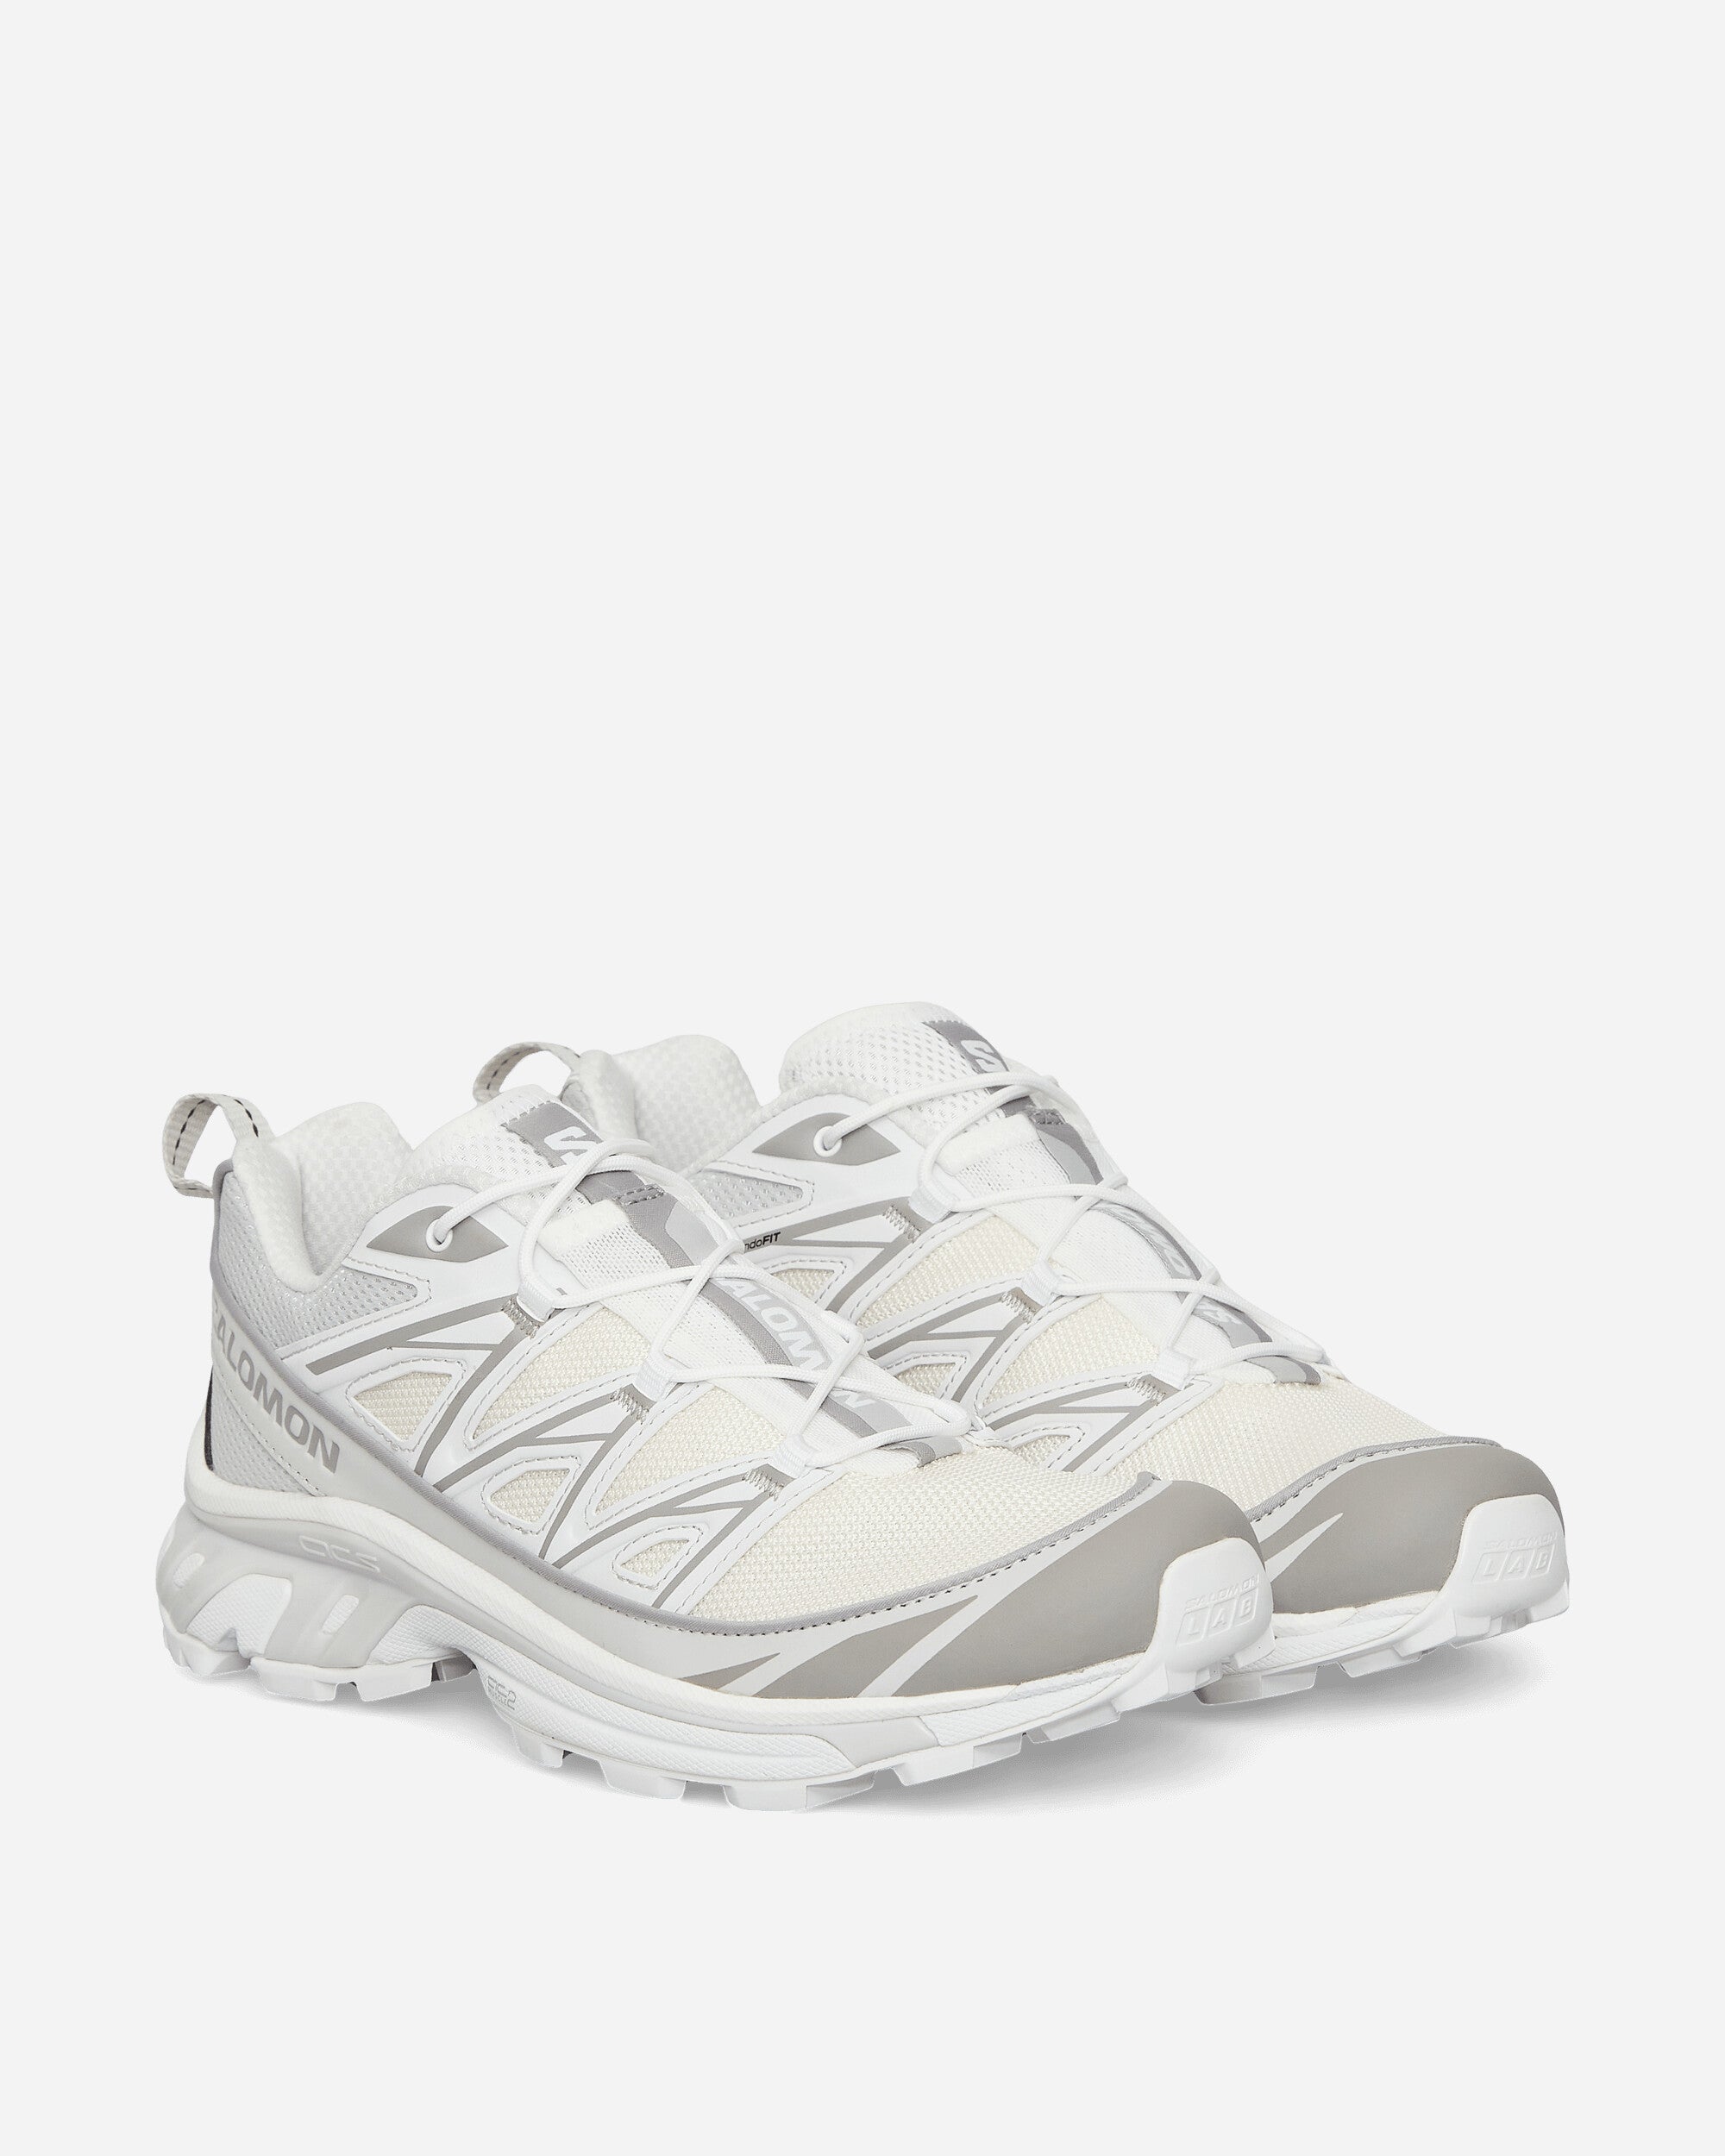 XT-6 Expanse Sneakers Vanilla Ice / Alloy / White